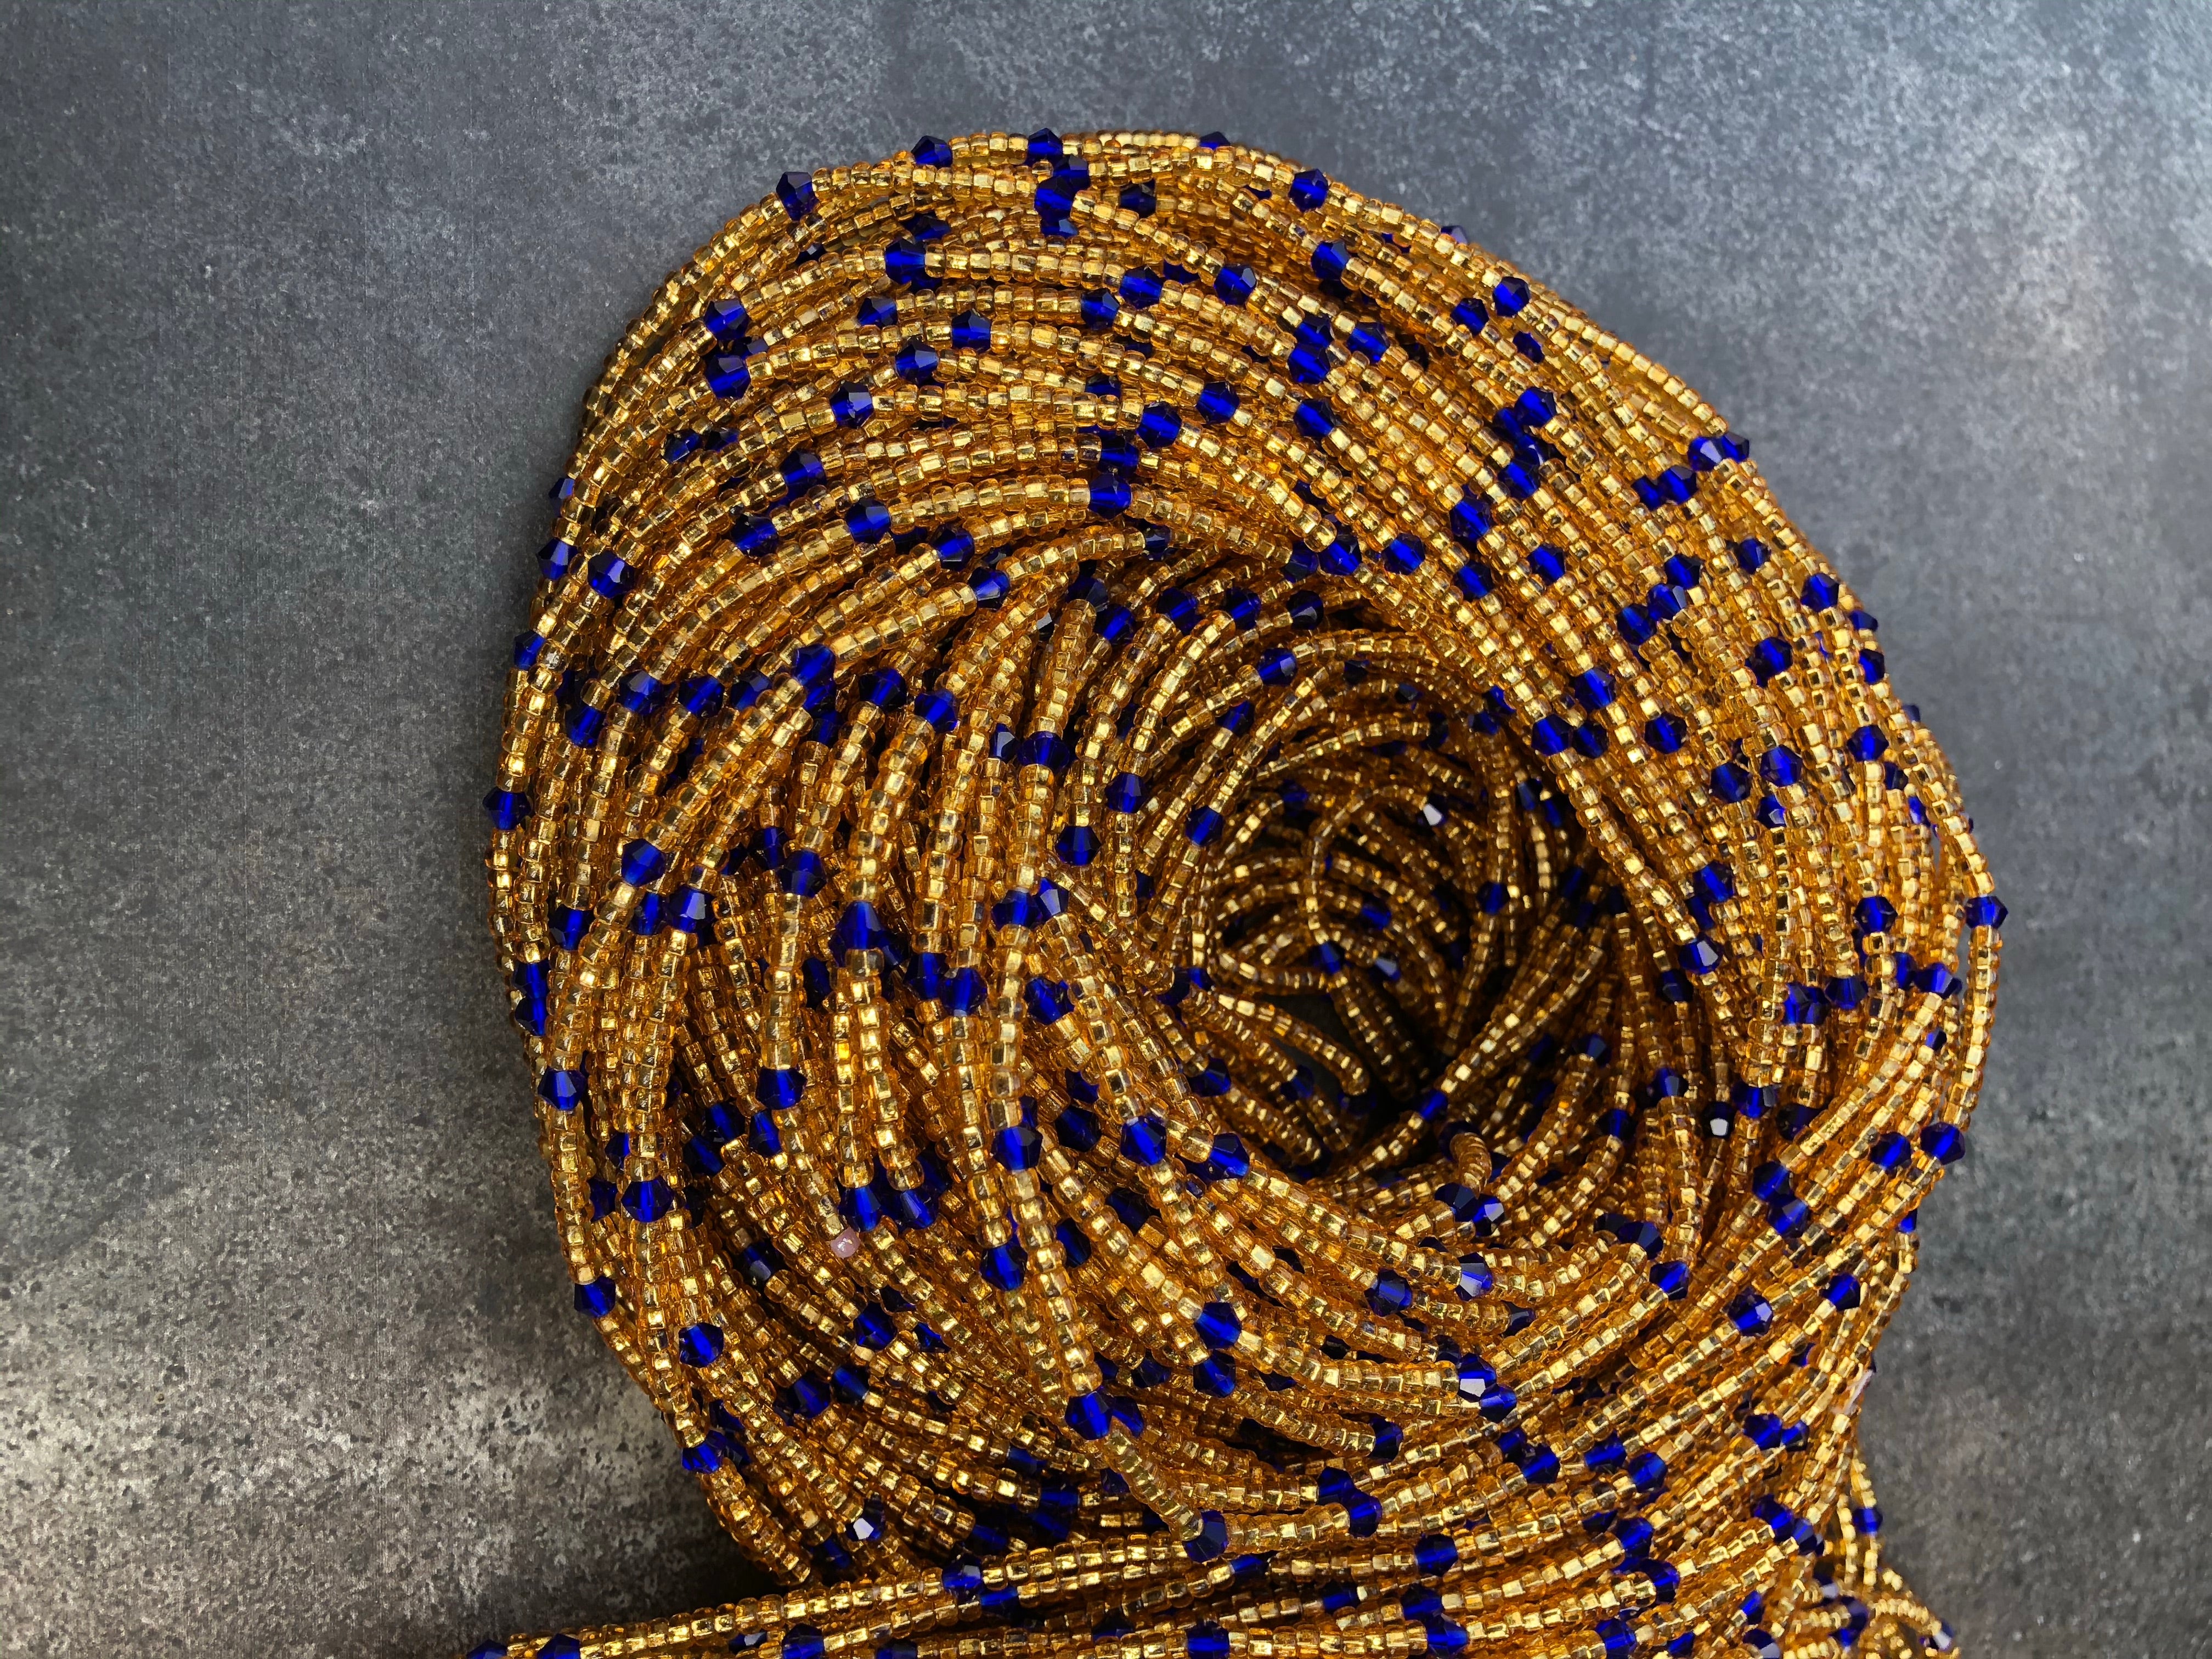 Waist Beads Kit, Blue and Gold Waist Beads